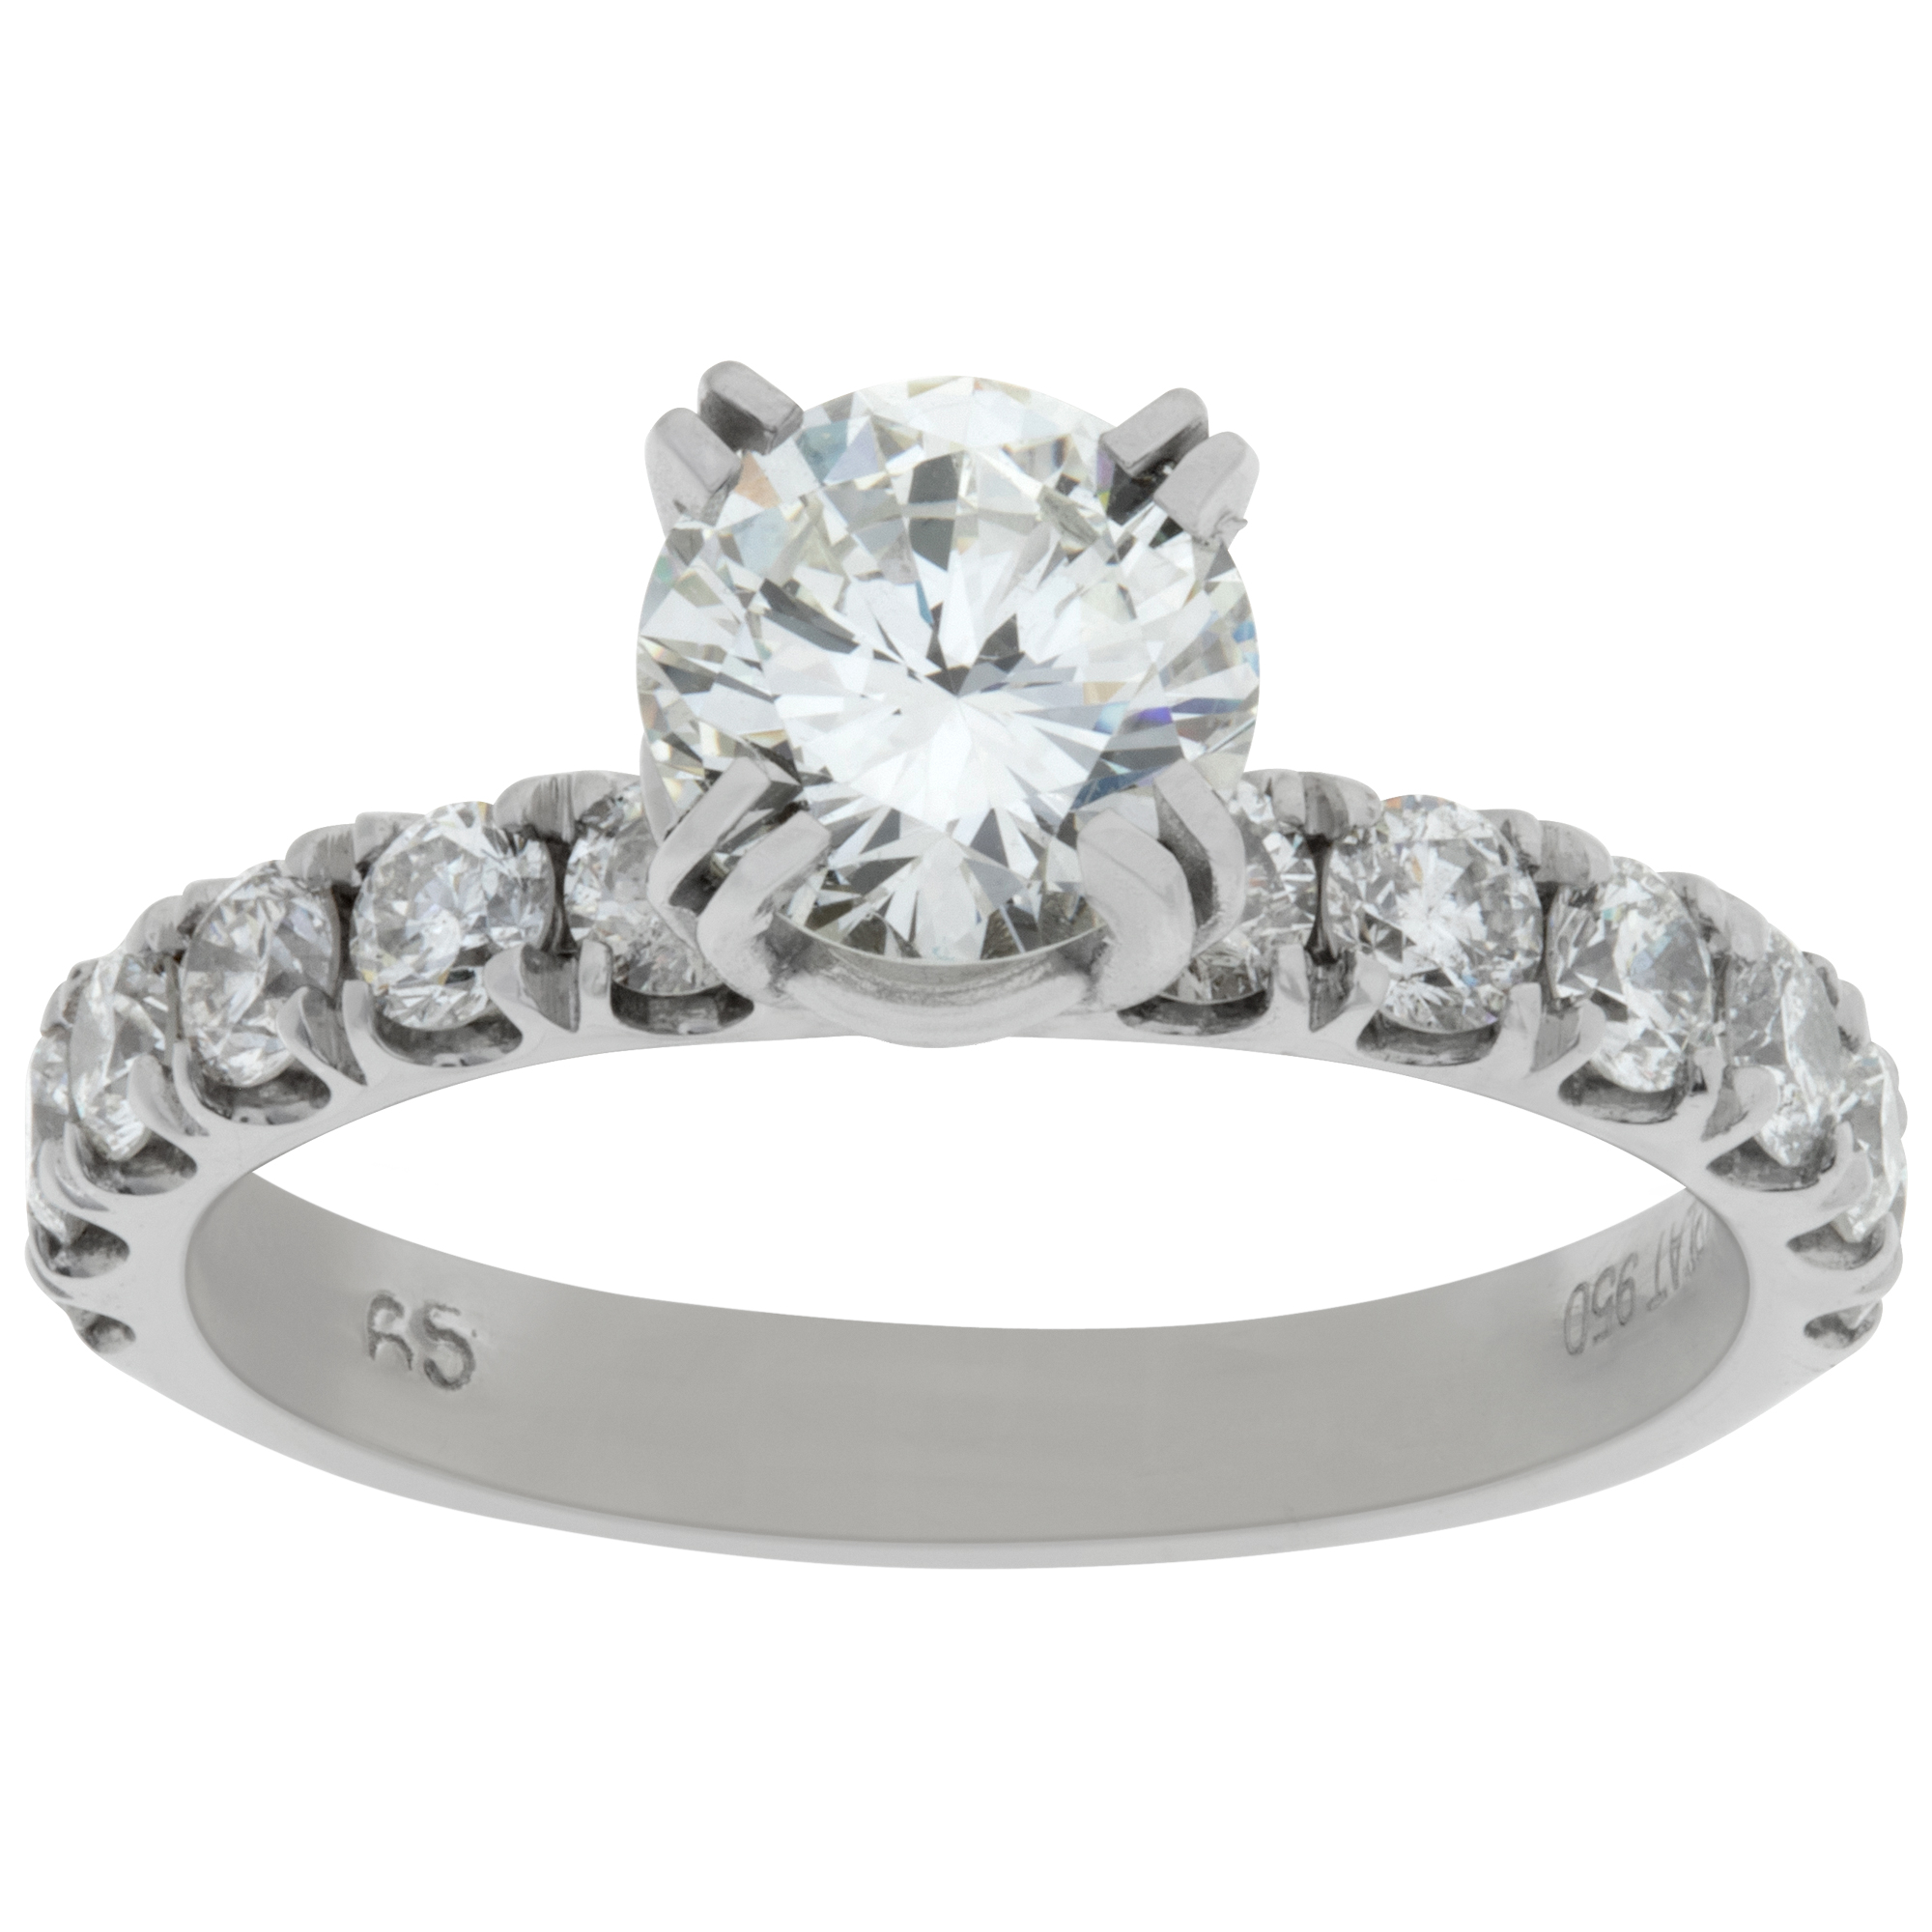 GIA certified round brilliant cut diamond 1.07 carat (I color, VS2 clarity) ring set in platinum image 1